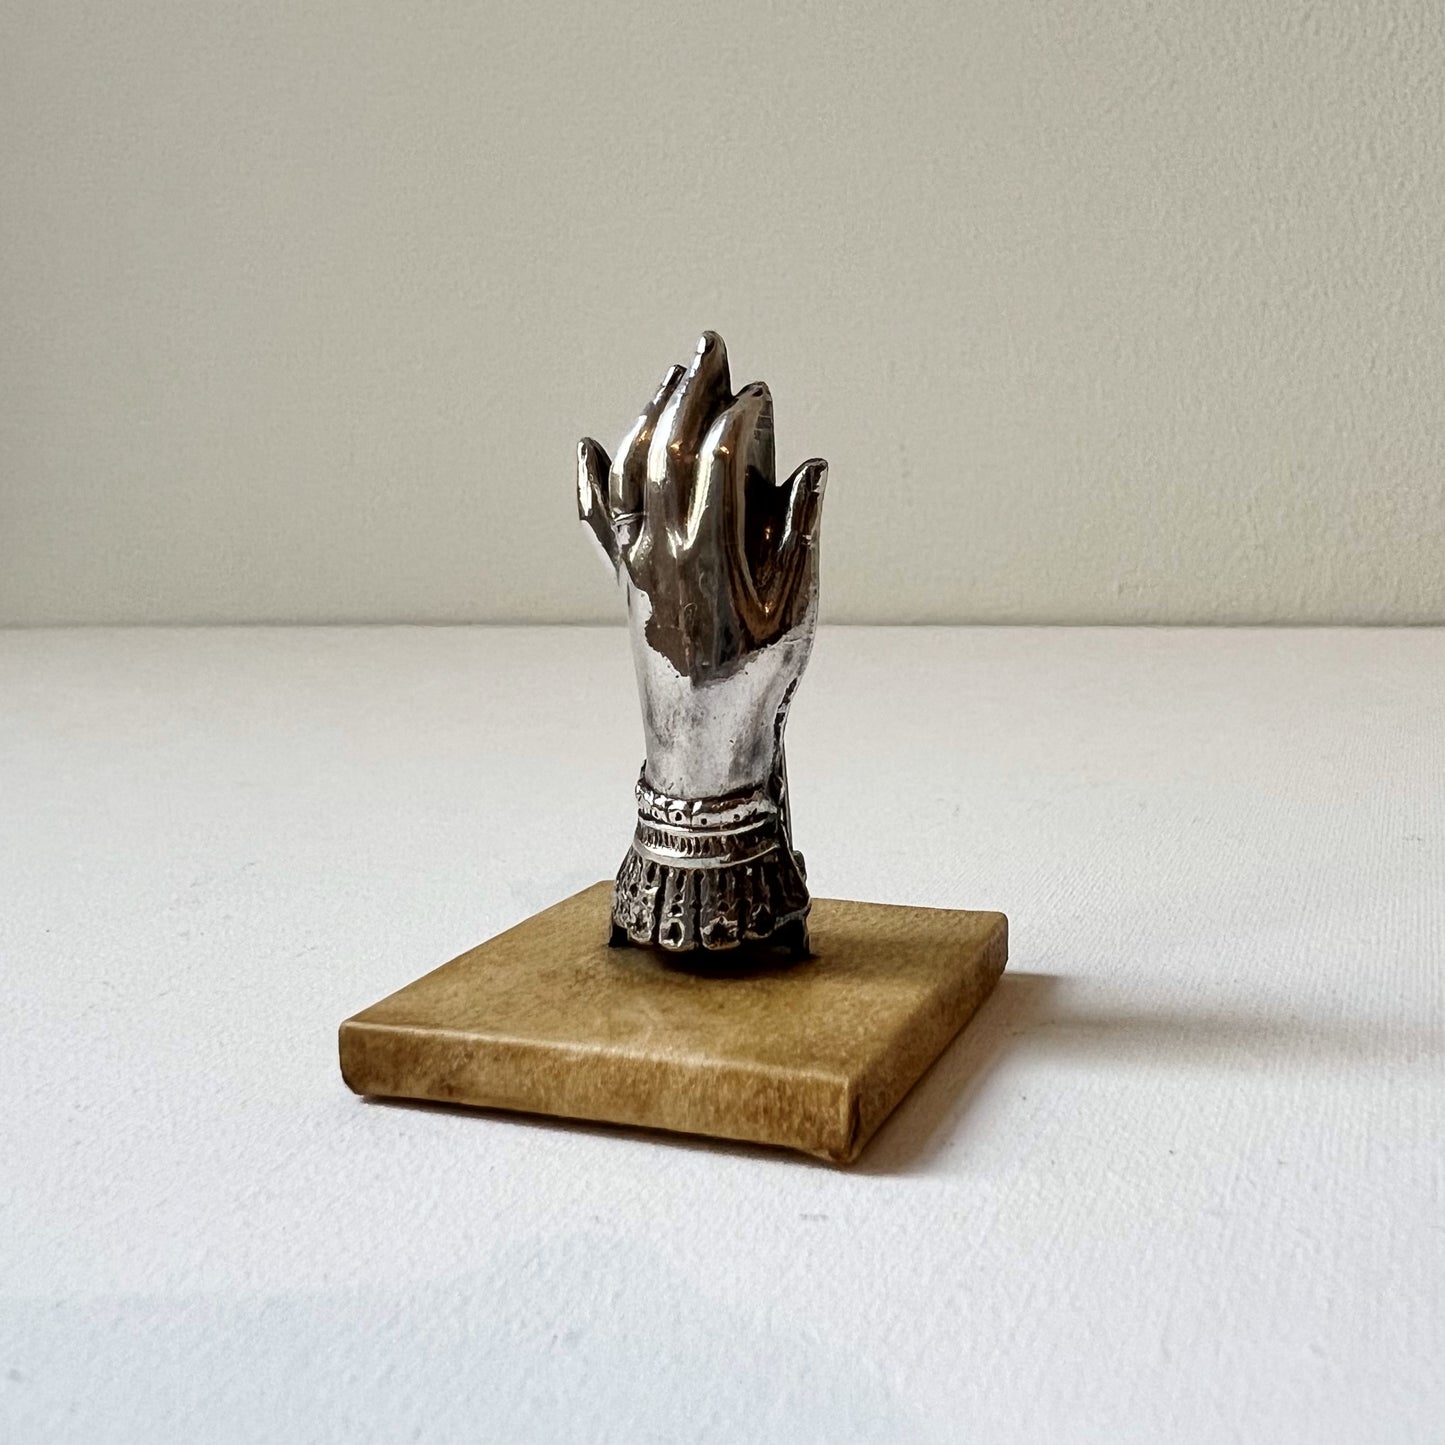 【Antique】France - 1900s Hand Motif Paper Clip（Leather Pedestal）